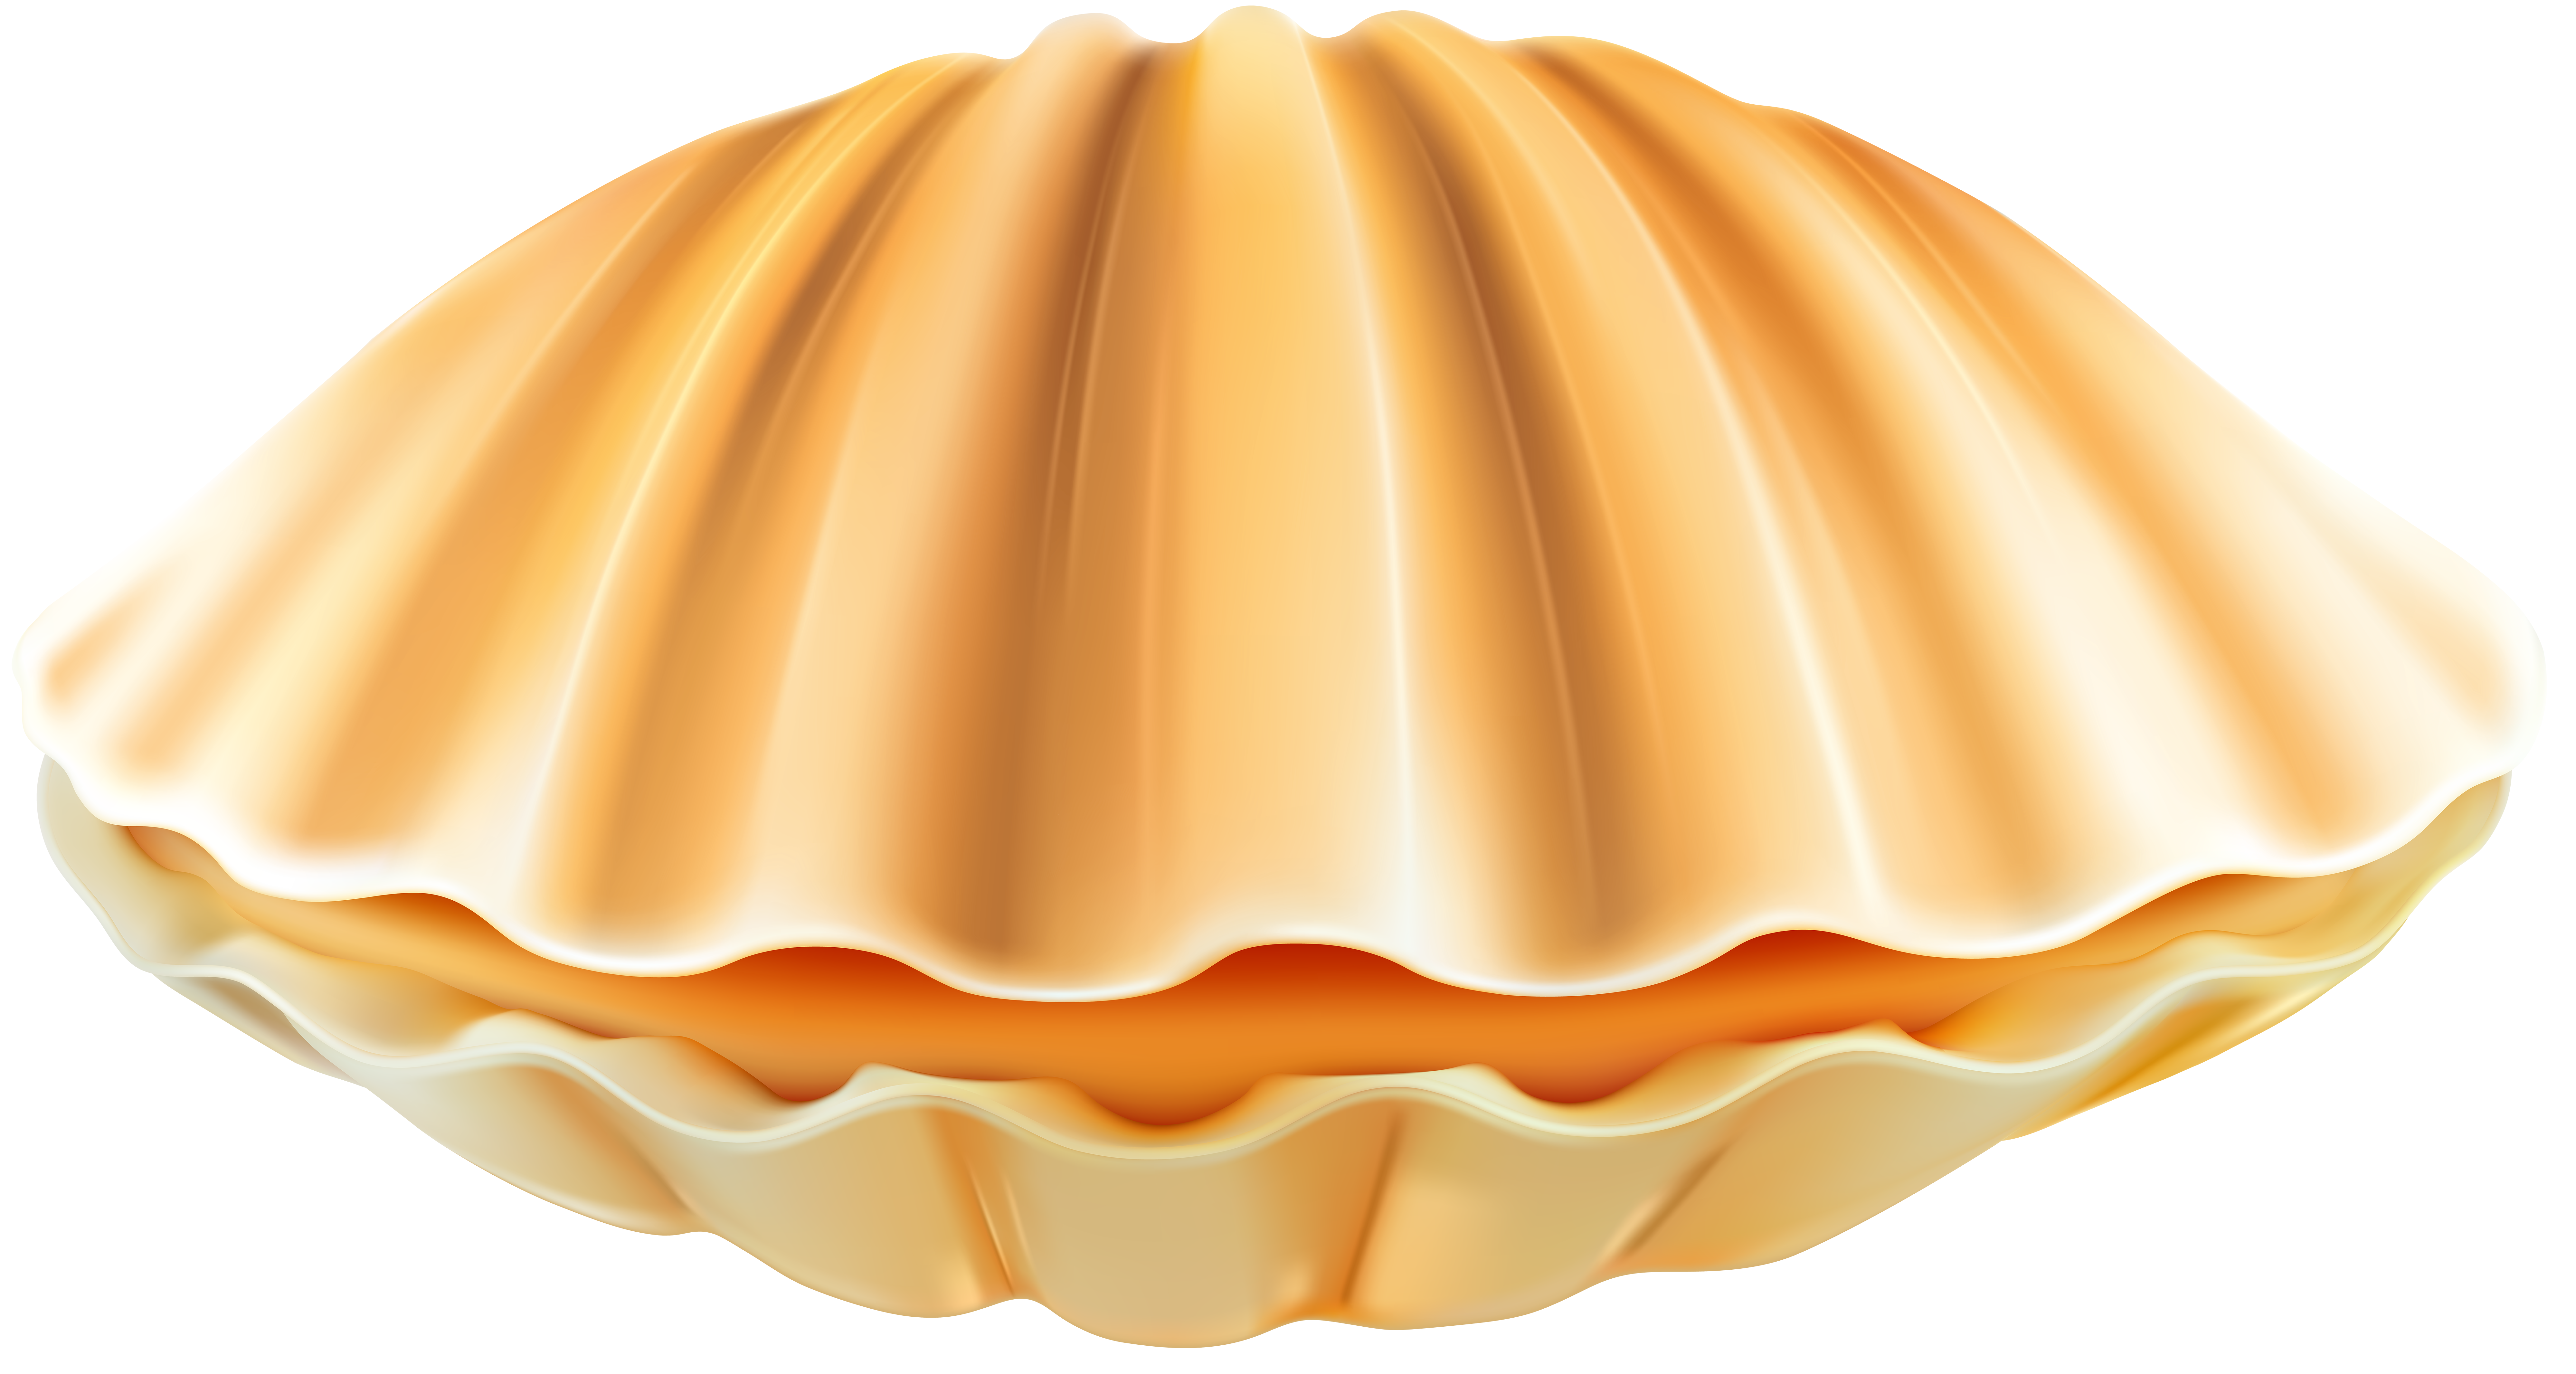 clam clipart closed